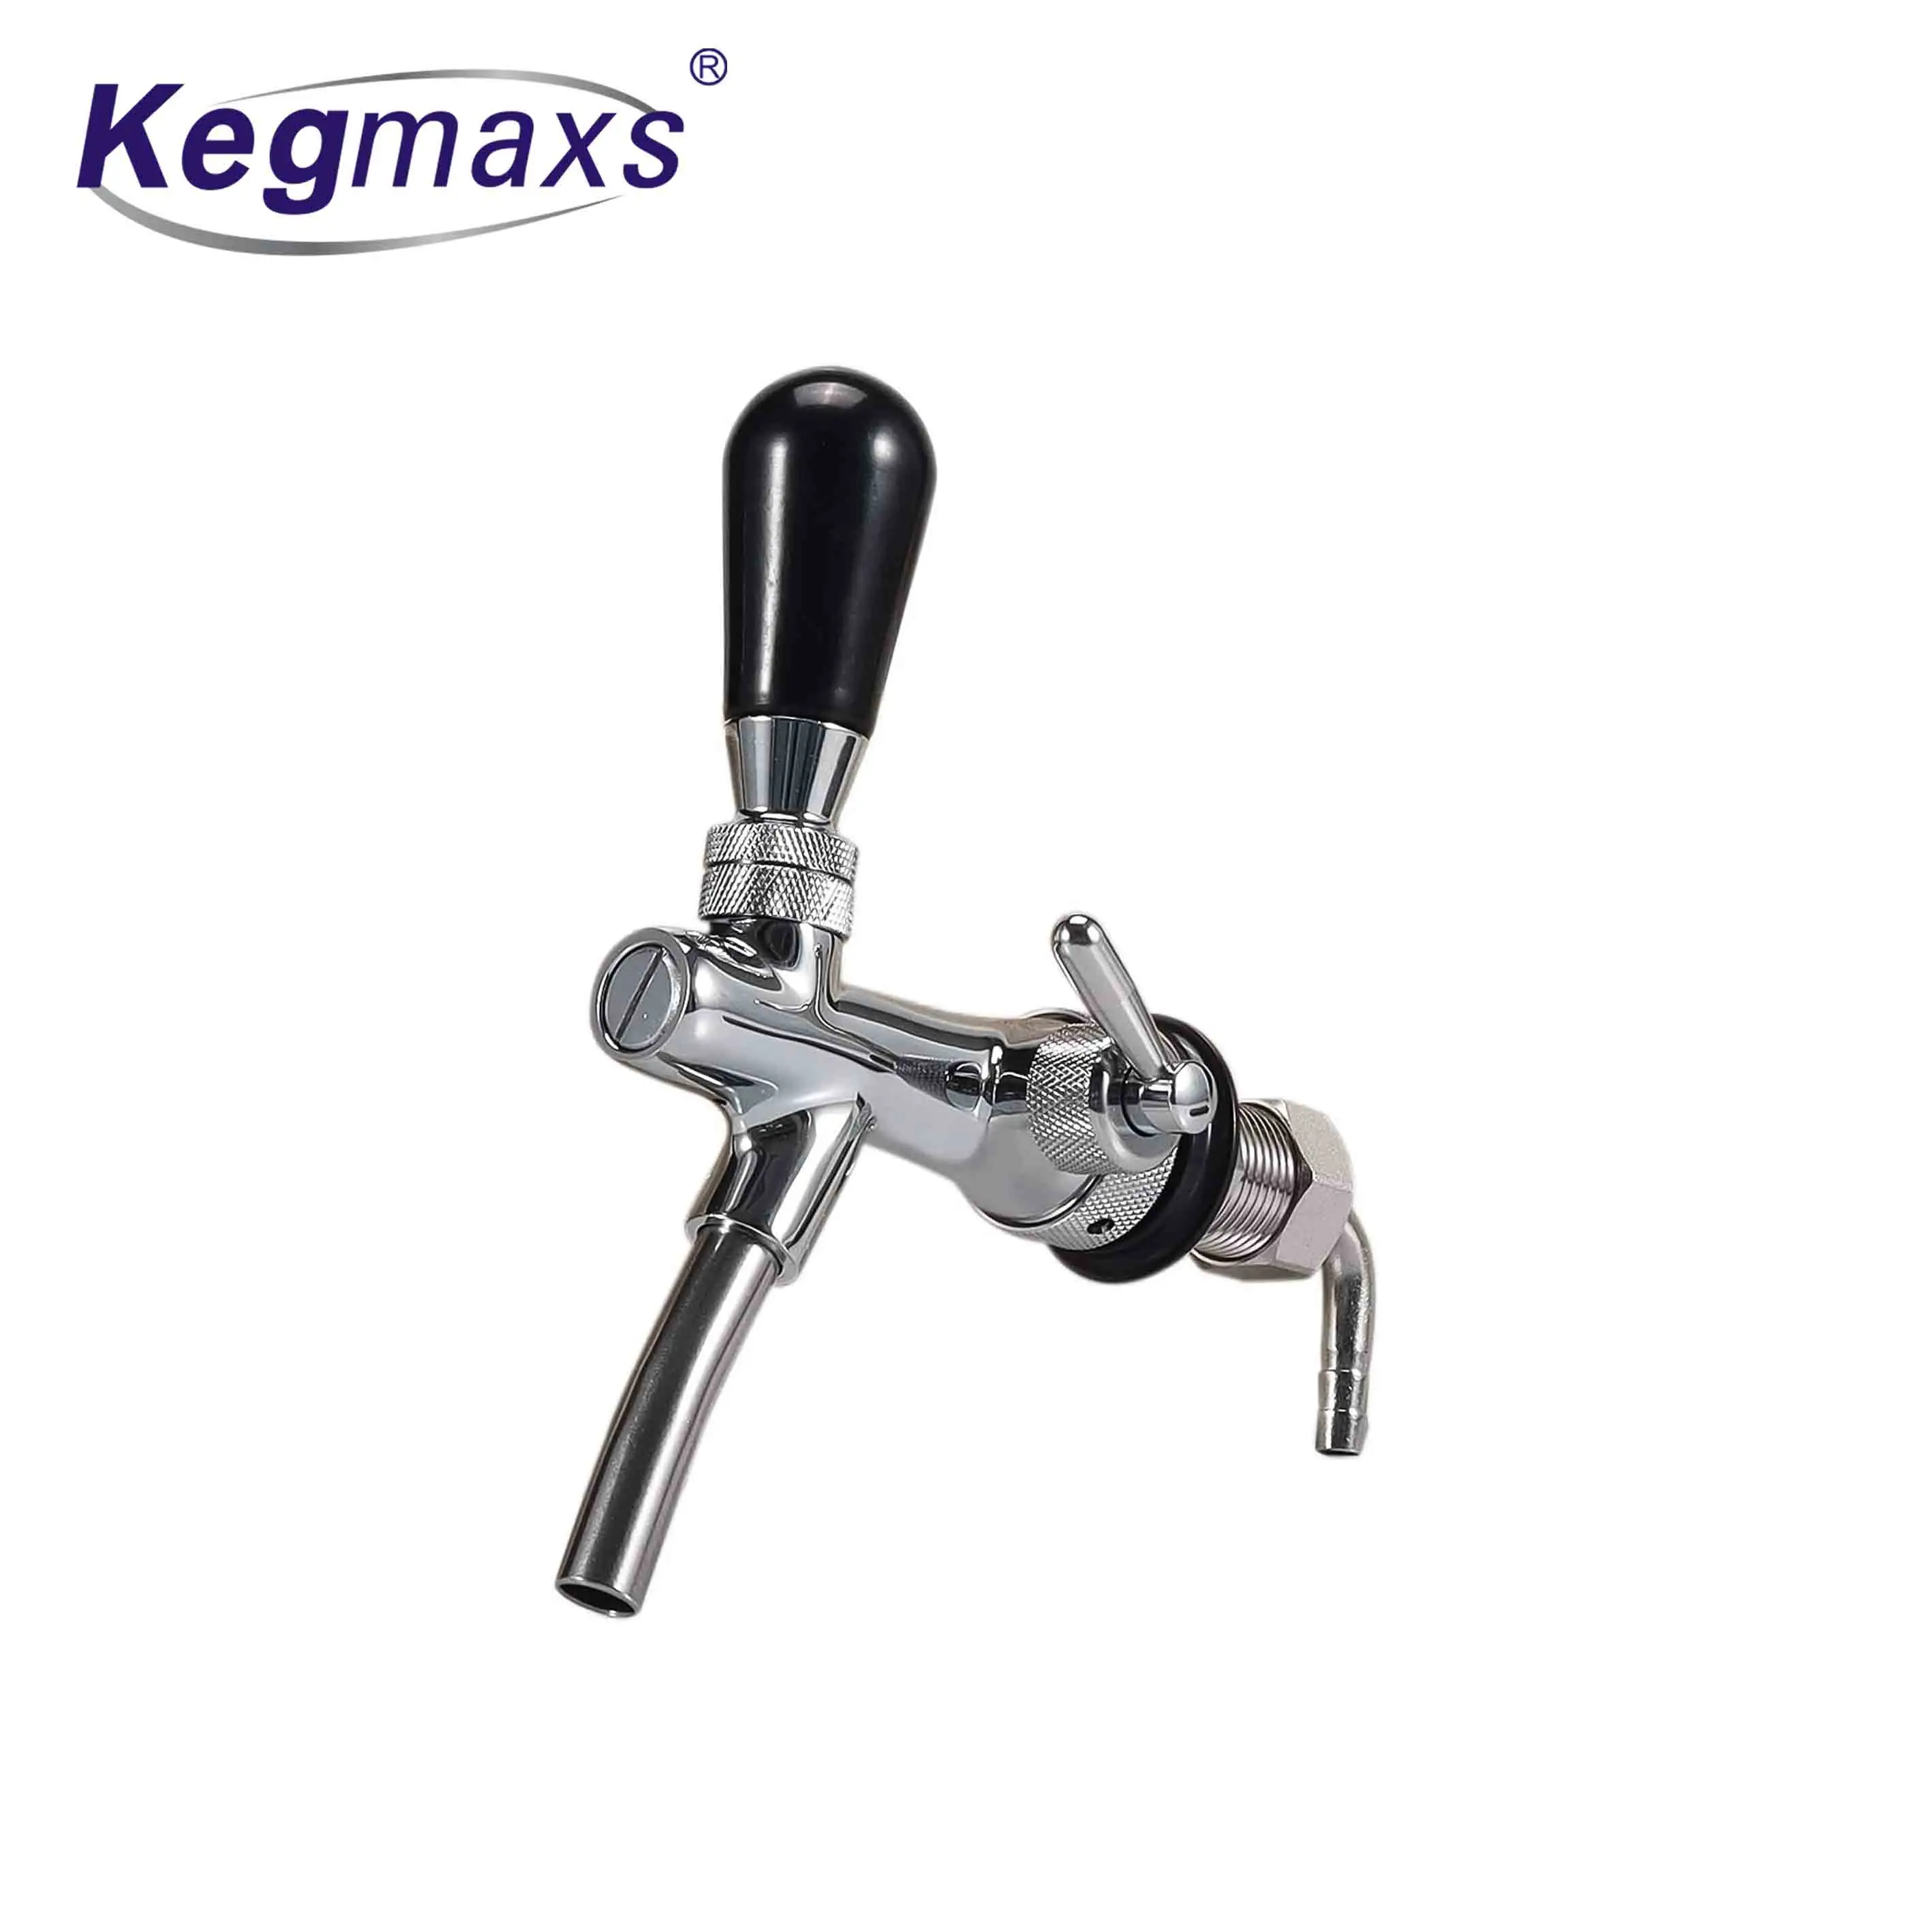 Kegmaxs регулируемый кран для пива включает регулятор расхода пива хромированный стержень G5/8 кран для домашнего пивоварения